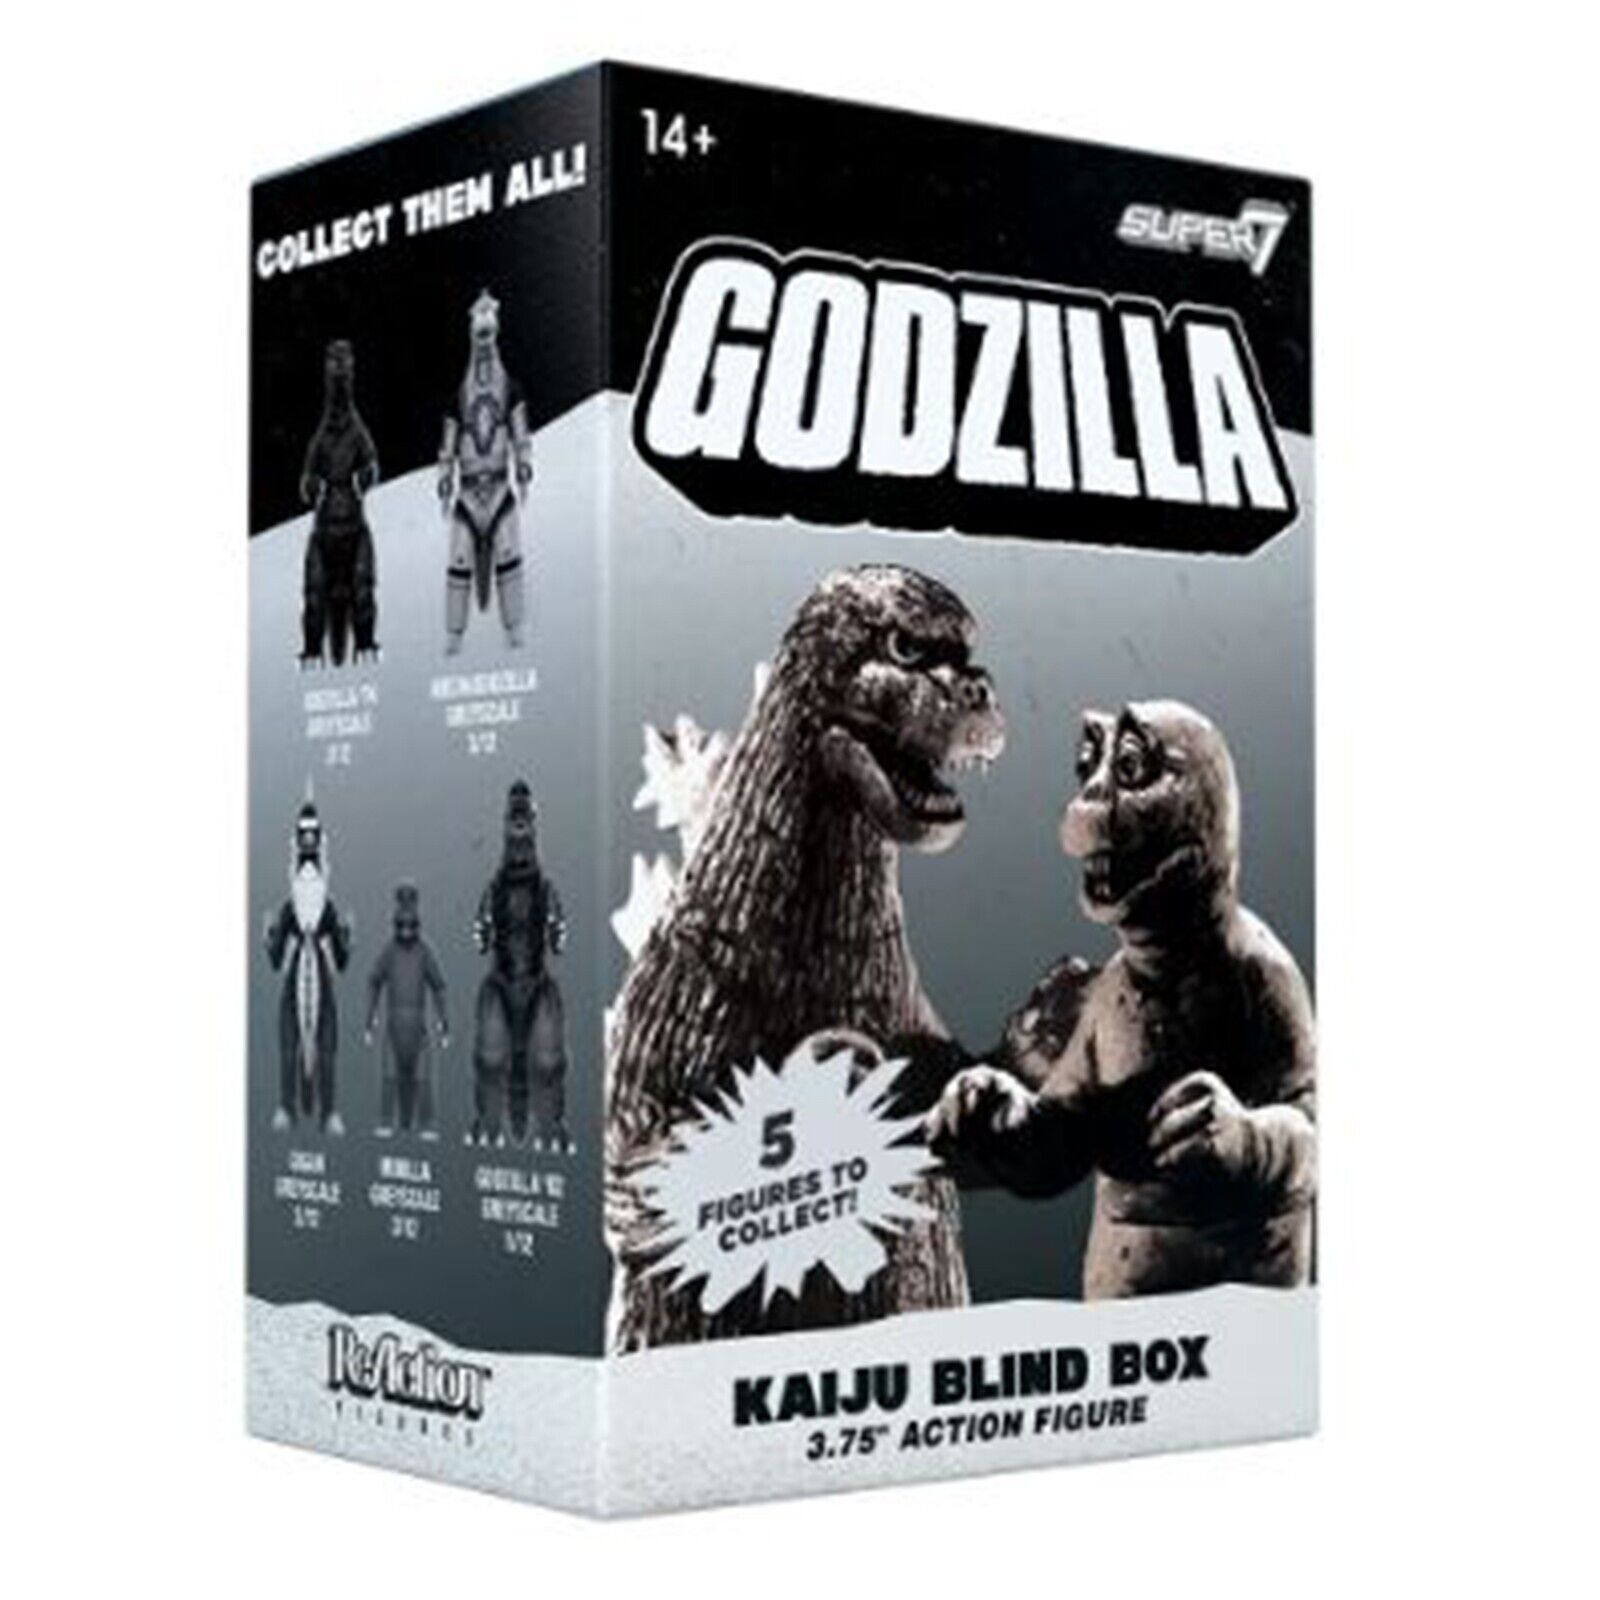 Super7 Godzilla Series 2 Kaiju Blind Box Mini Figure NEW